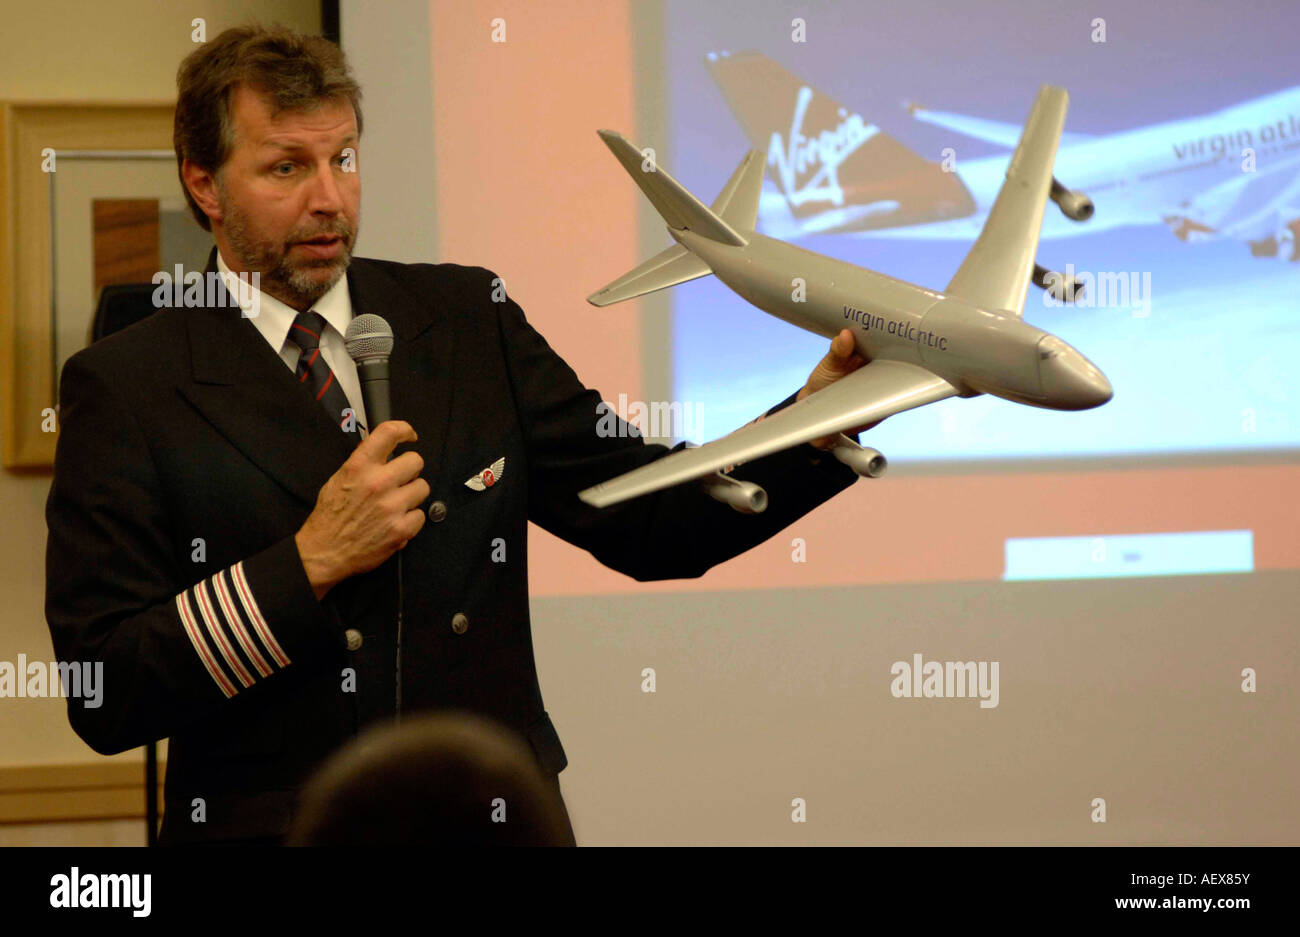 Volar sin miedo curso organizado por Virgin Airlines. Foto de stock